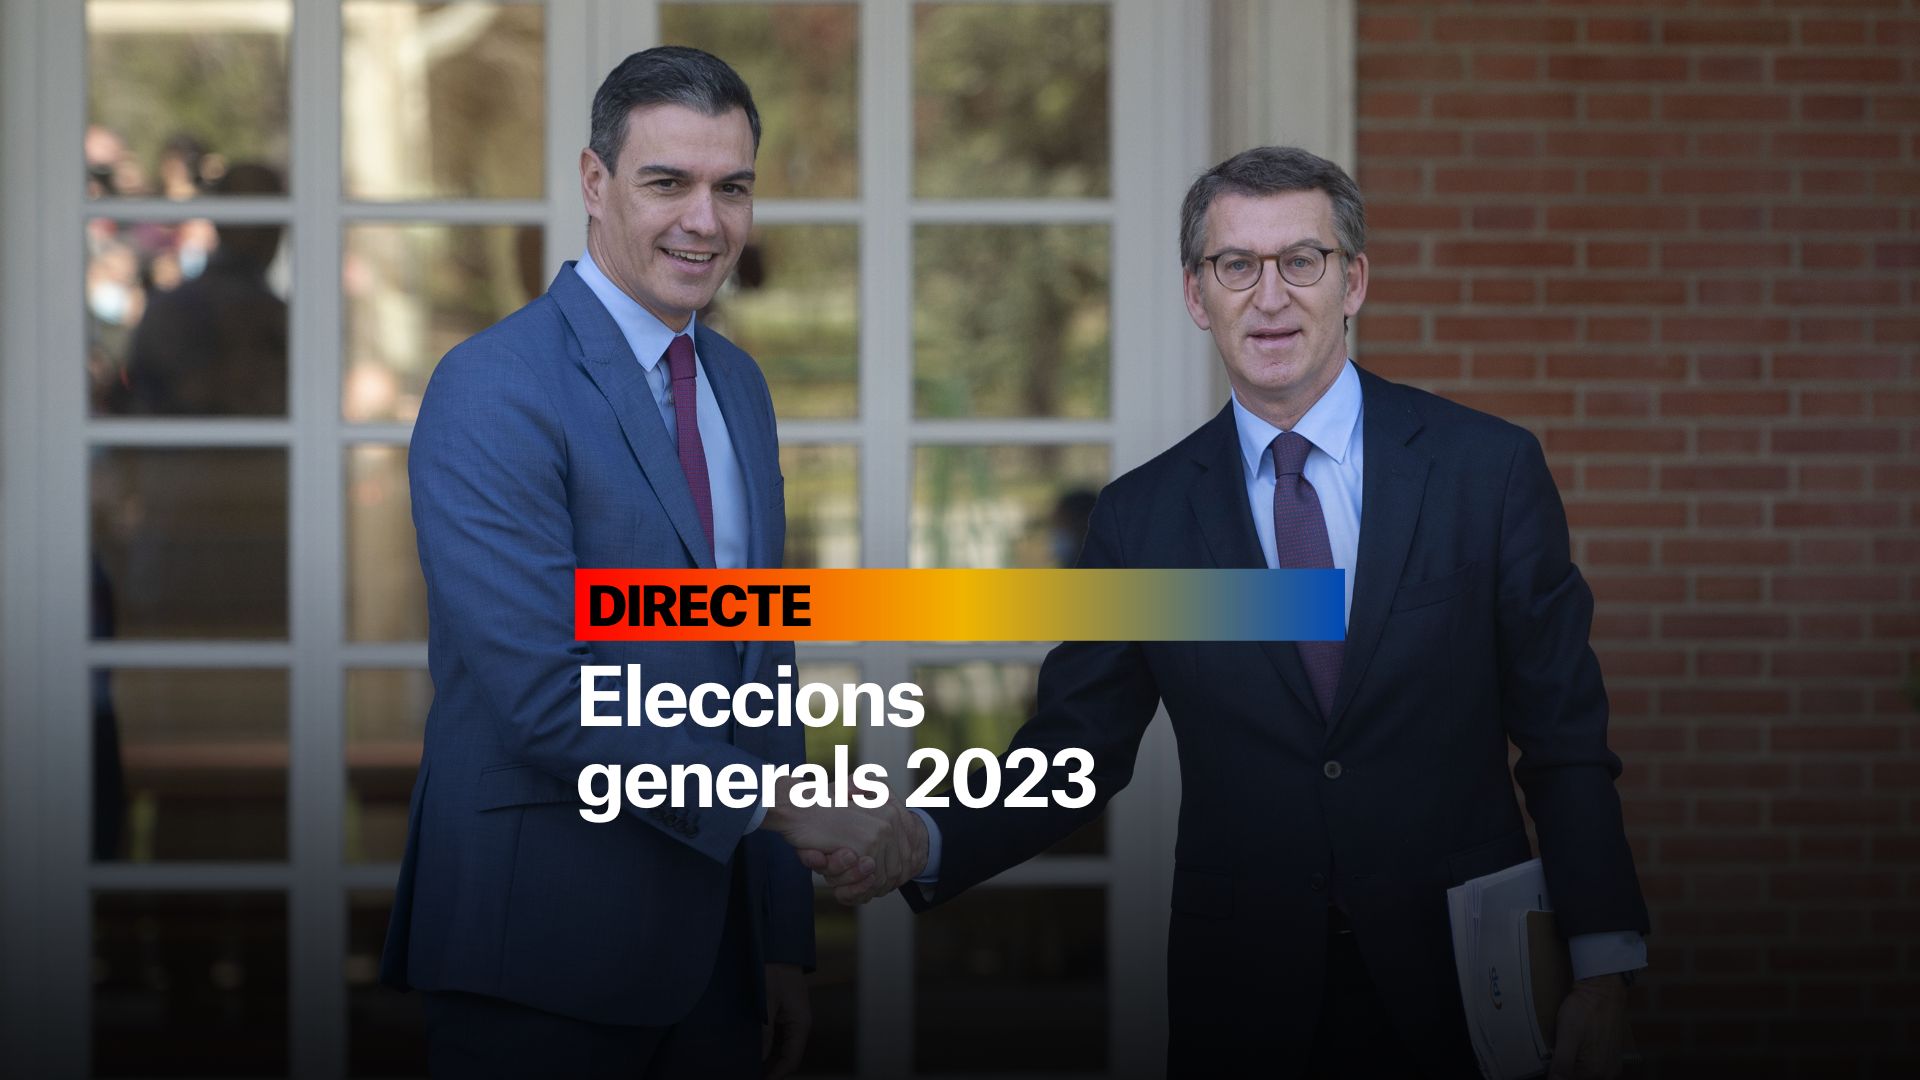 Eleccions generals 2023, DIRECTE | Últimes notícies de l'11 de juliol